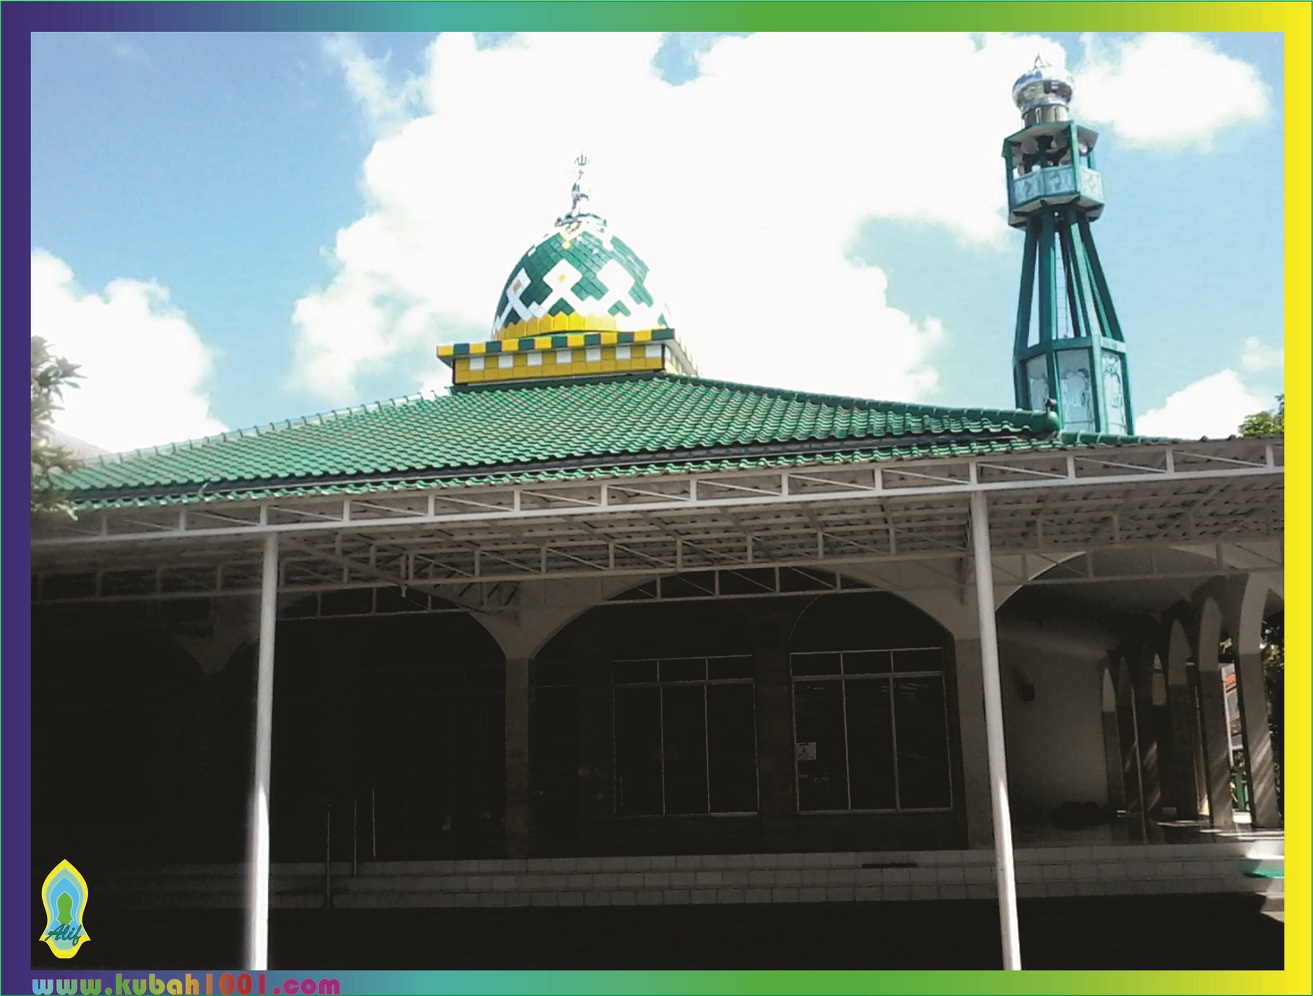 Gambar Ilustrasi Kubah Masjid Iluszi